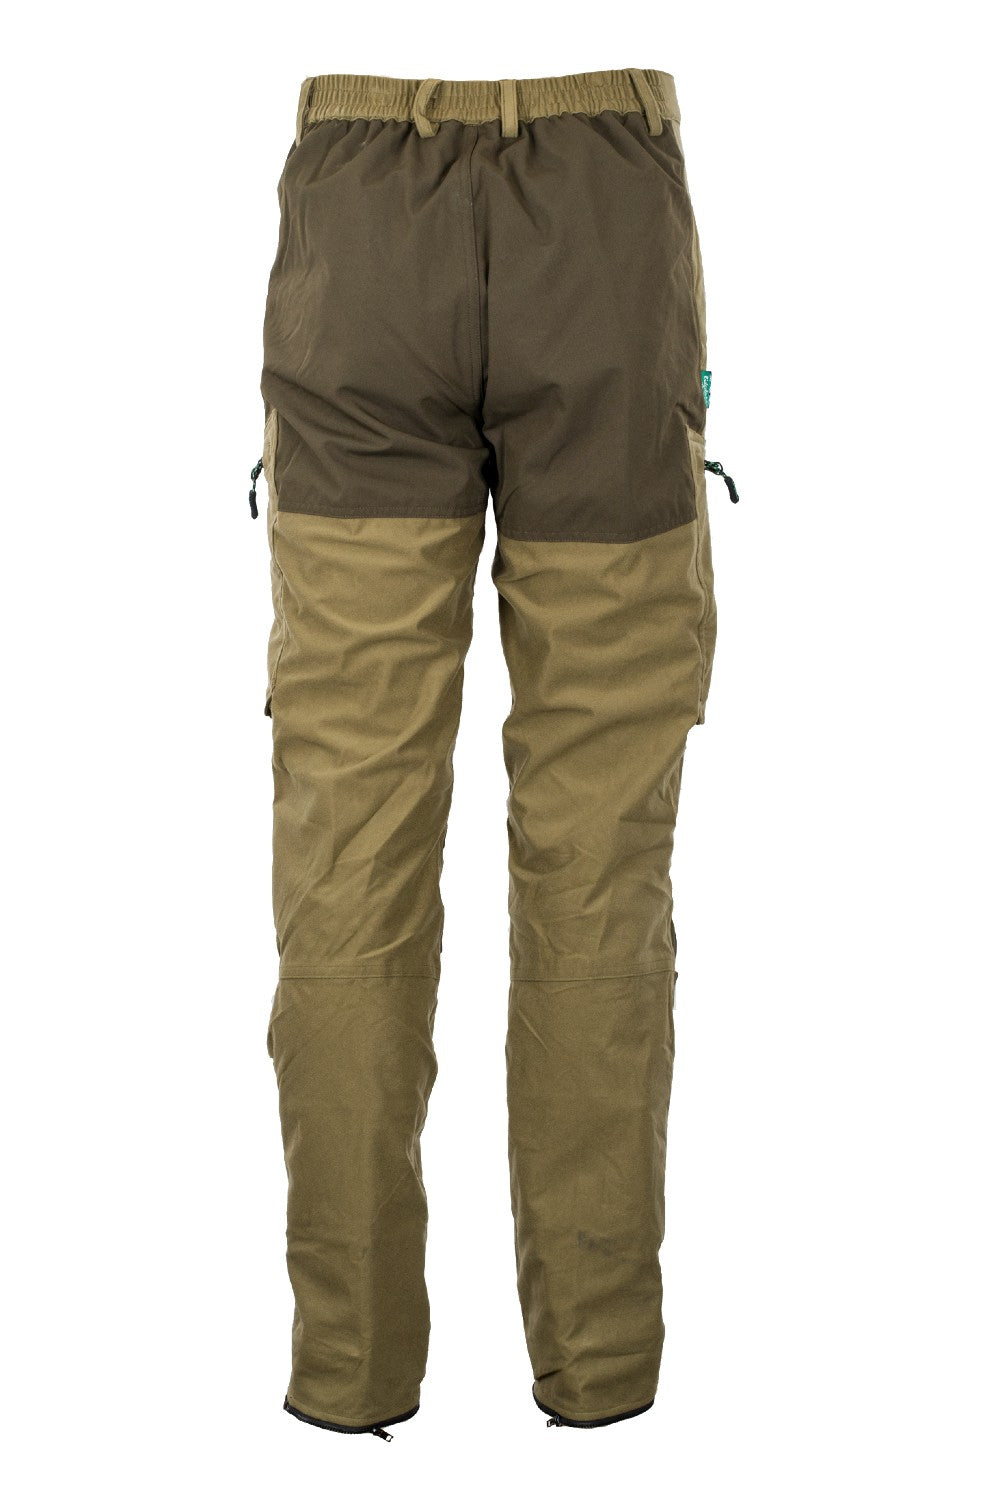 Ridgeline Pintail Explorer Waterproof Pants